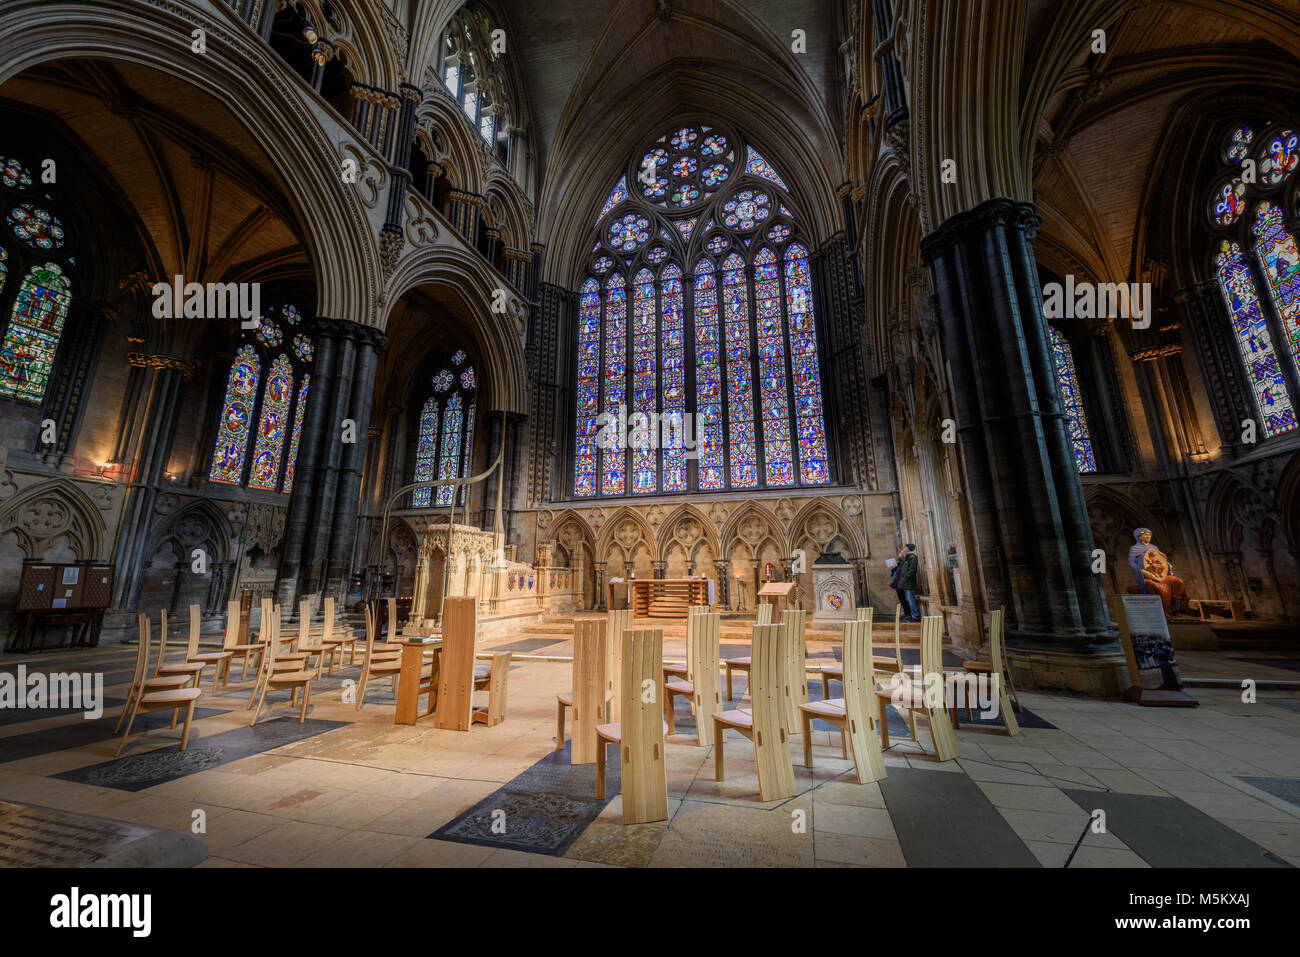 Il santuario di San Hugh e l'estremità est altare al medioevale cristiana cattedrale costruita dai Normanni a Lincoln, Inghilterra. Foto Stock